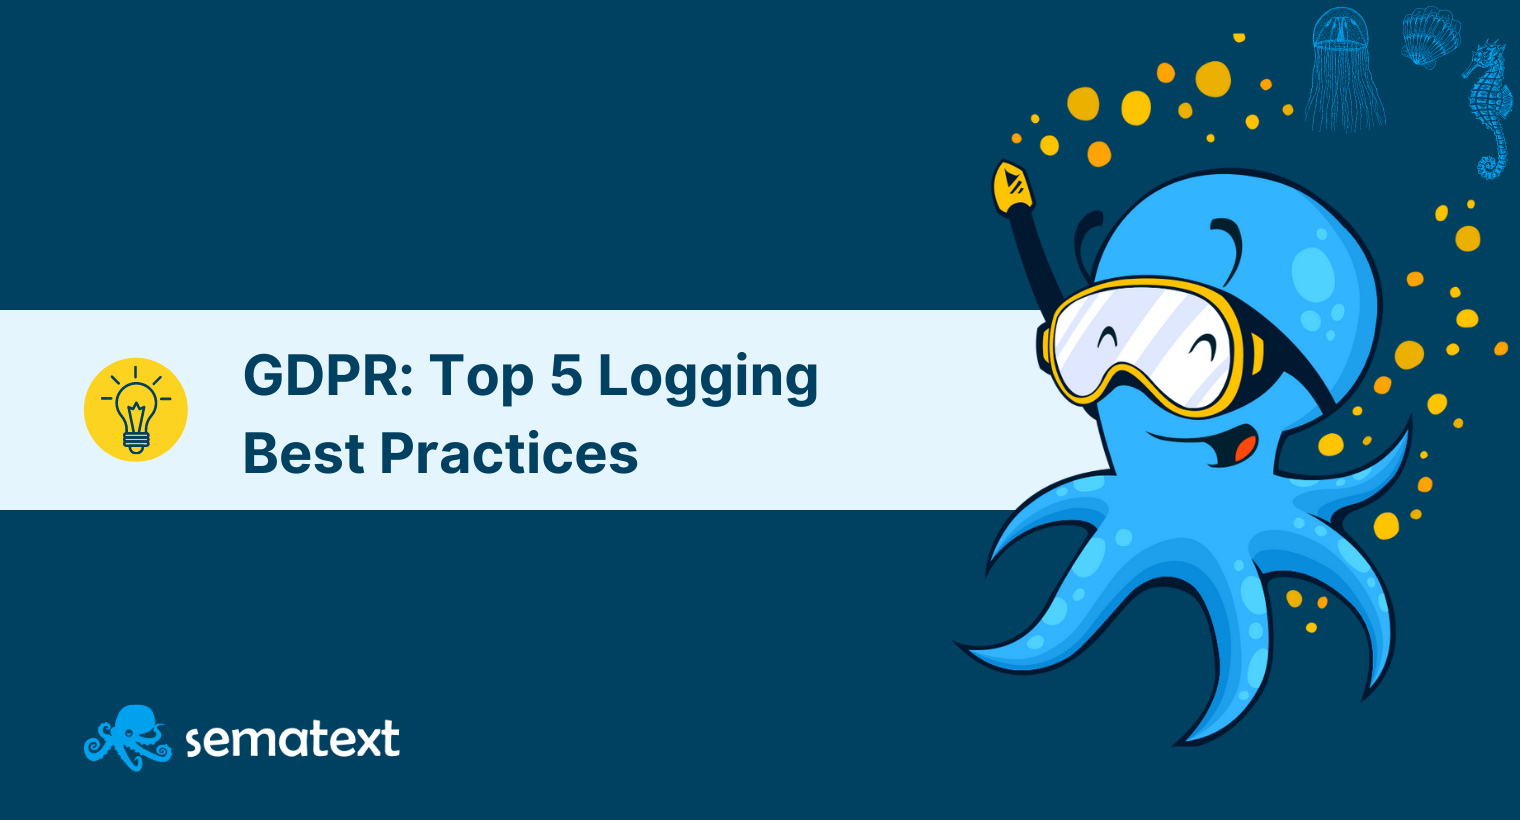 GDPR: Top 5 Logging Best Practices